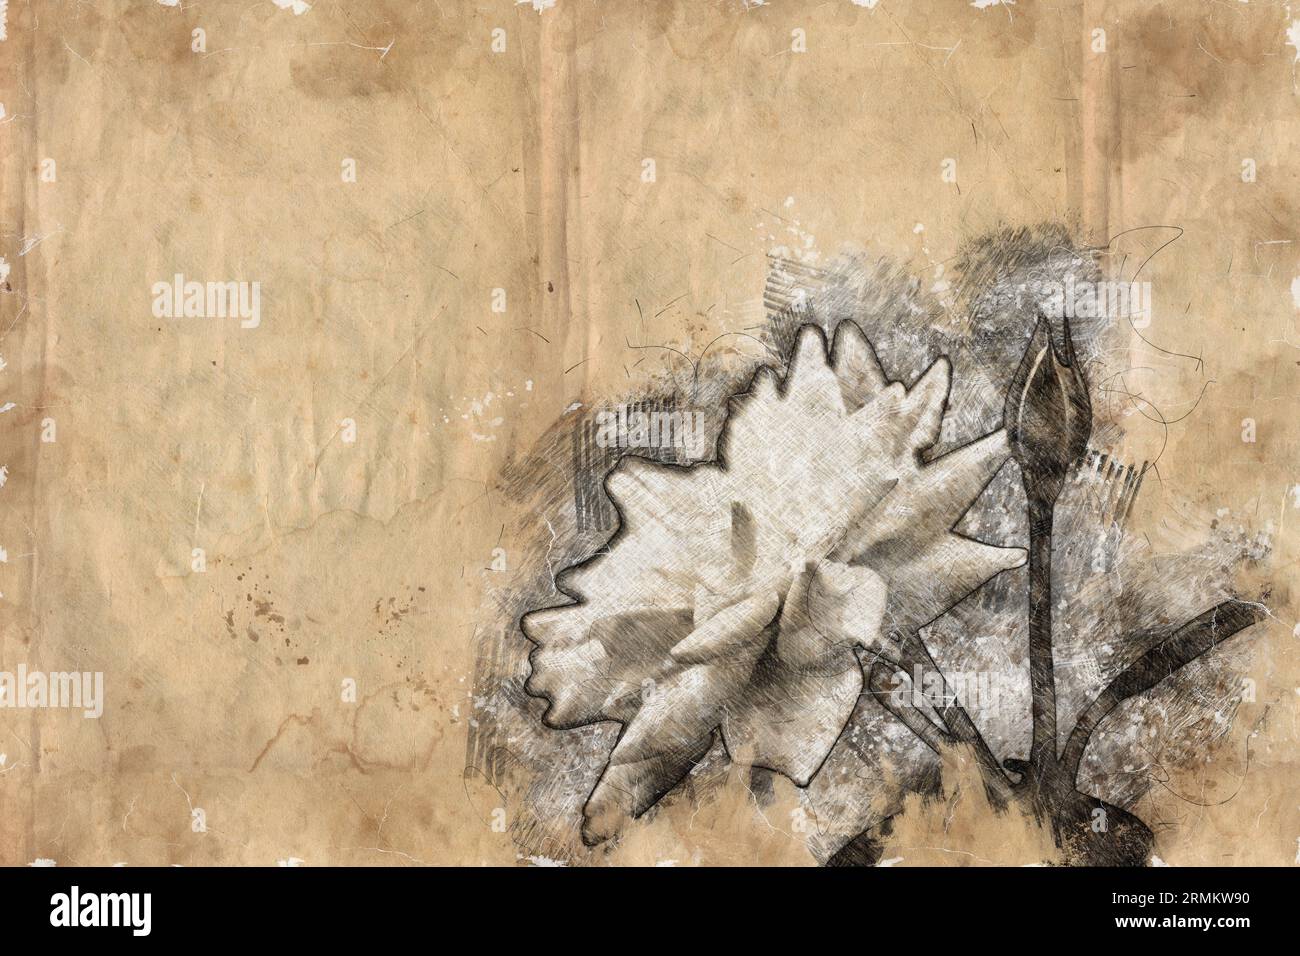 Image numériquement améliorée d'un gros plan d'une belle et parfaite rose blanche d'iceberg Banque D'Images